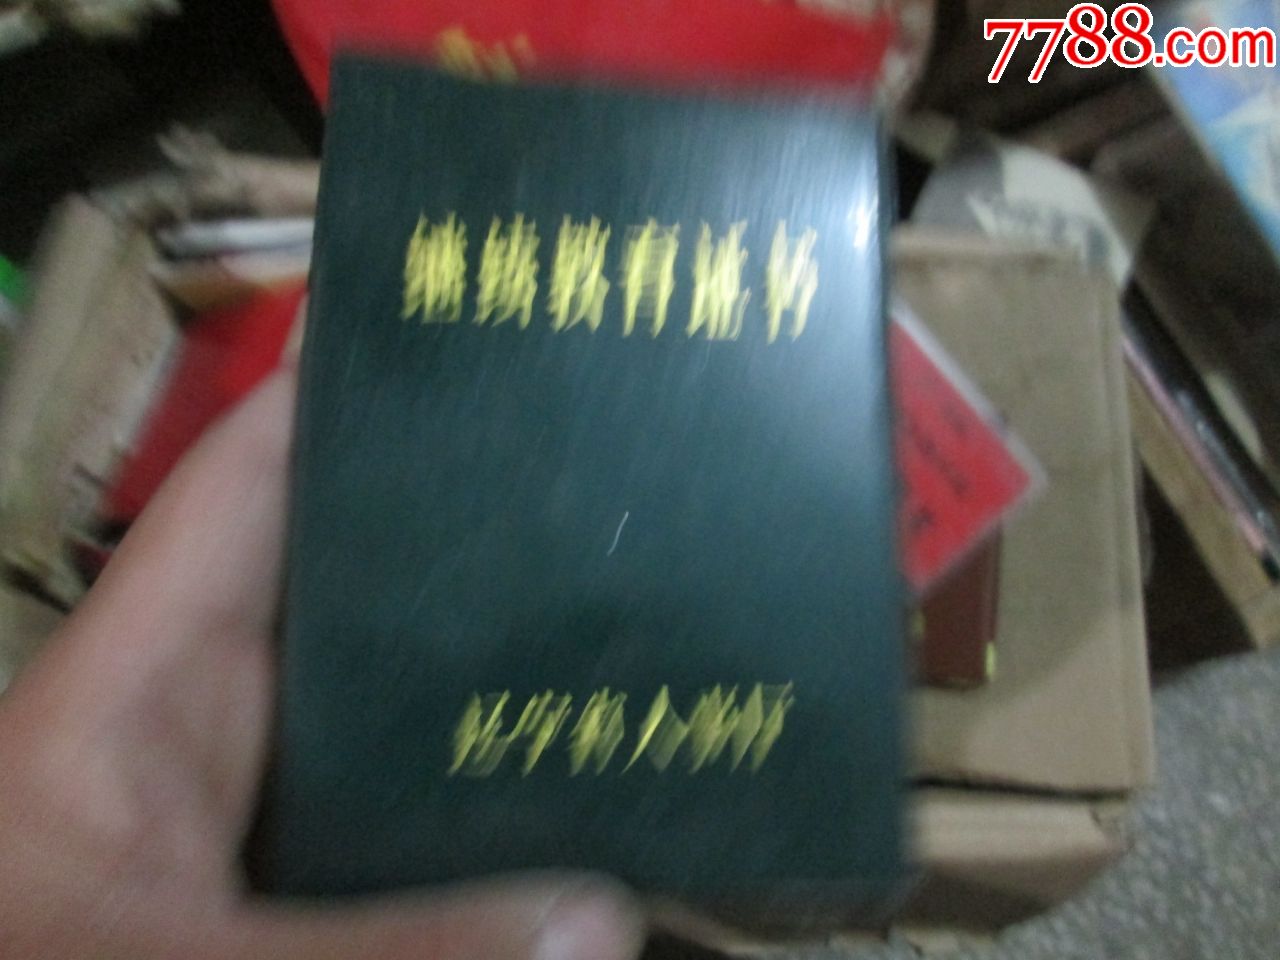 老证书:辽宁省人事厅继续教育证书(1991年,锦